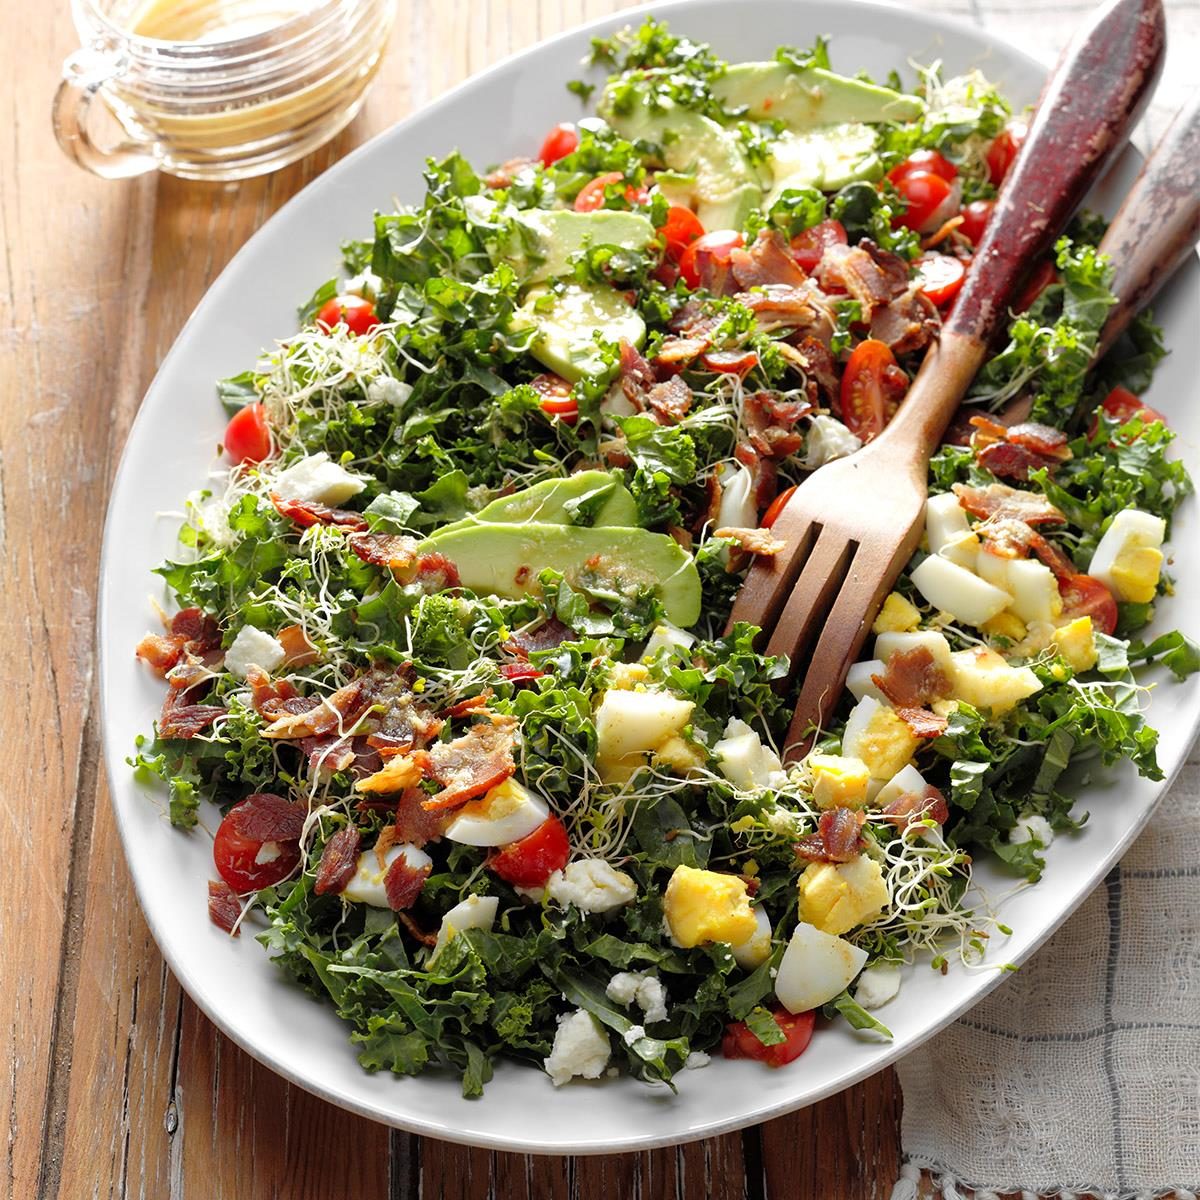 Sunday: Kale & Bacon Salad with Honey-Horseradish Vinaigrette